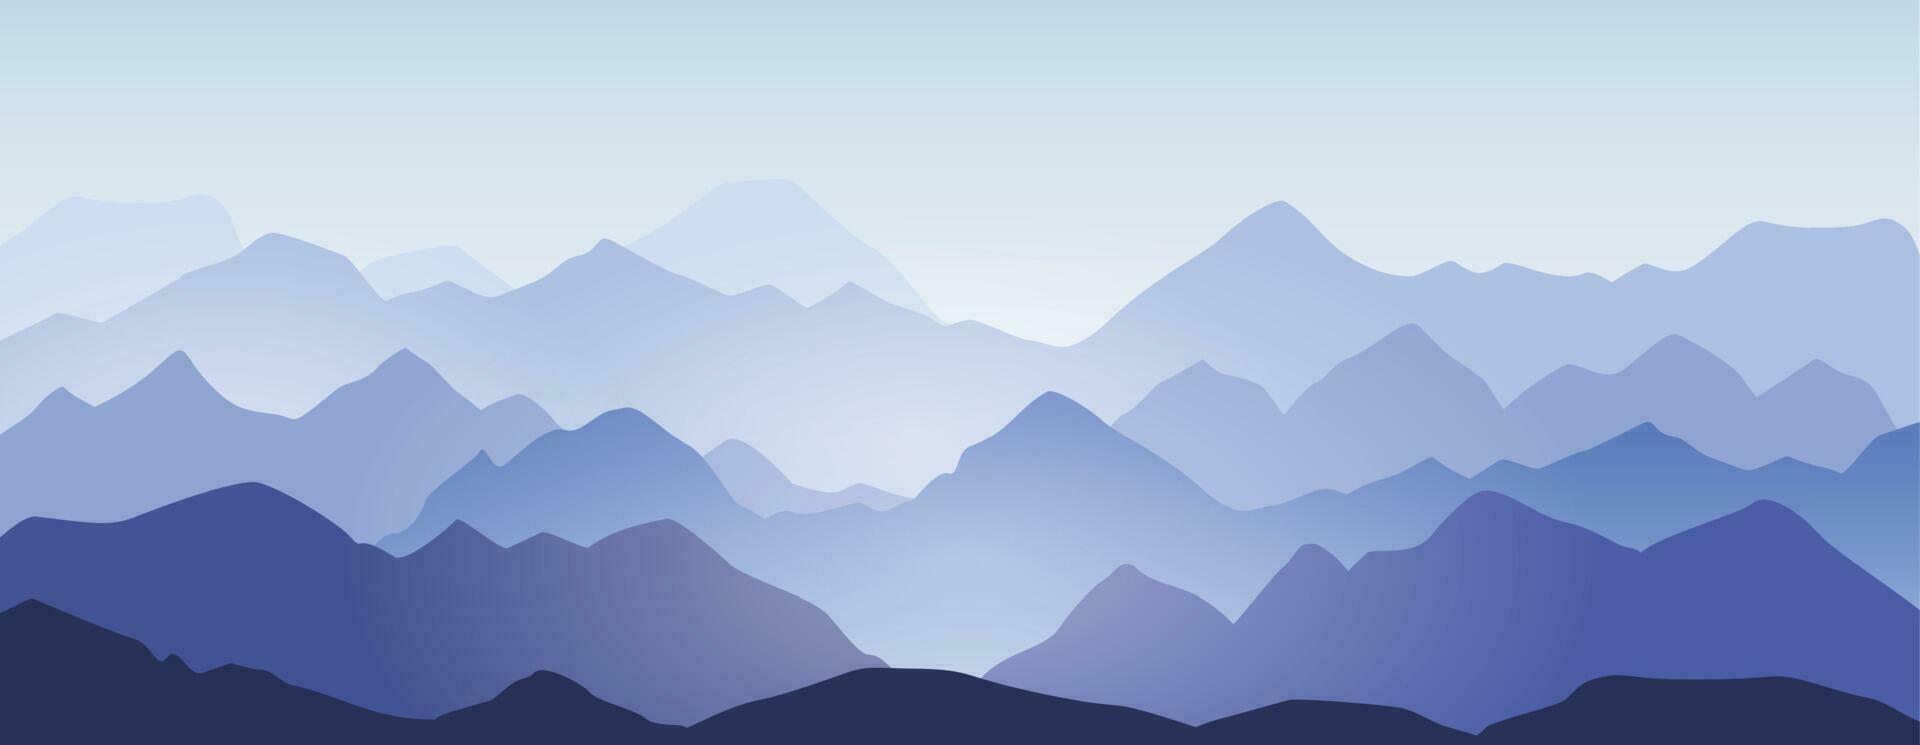 Berg Grate und Hügel Silhouette Landschaft Hintergrund. abstrakt Morgen Berge Panorama, schön Natur Szene Vektor Illustration